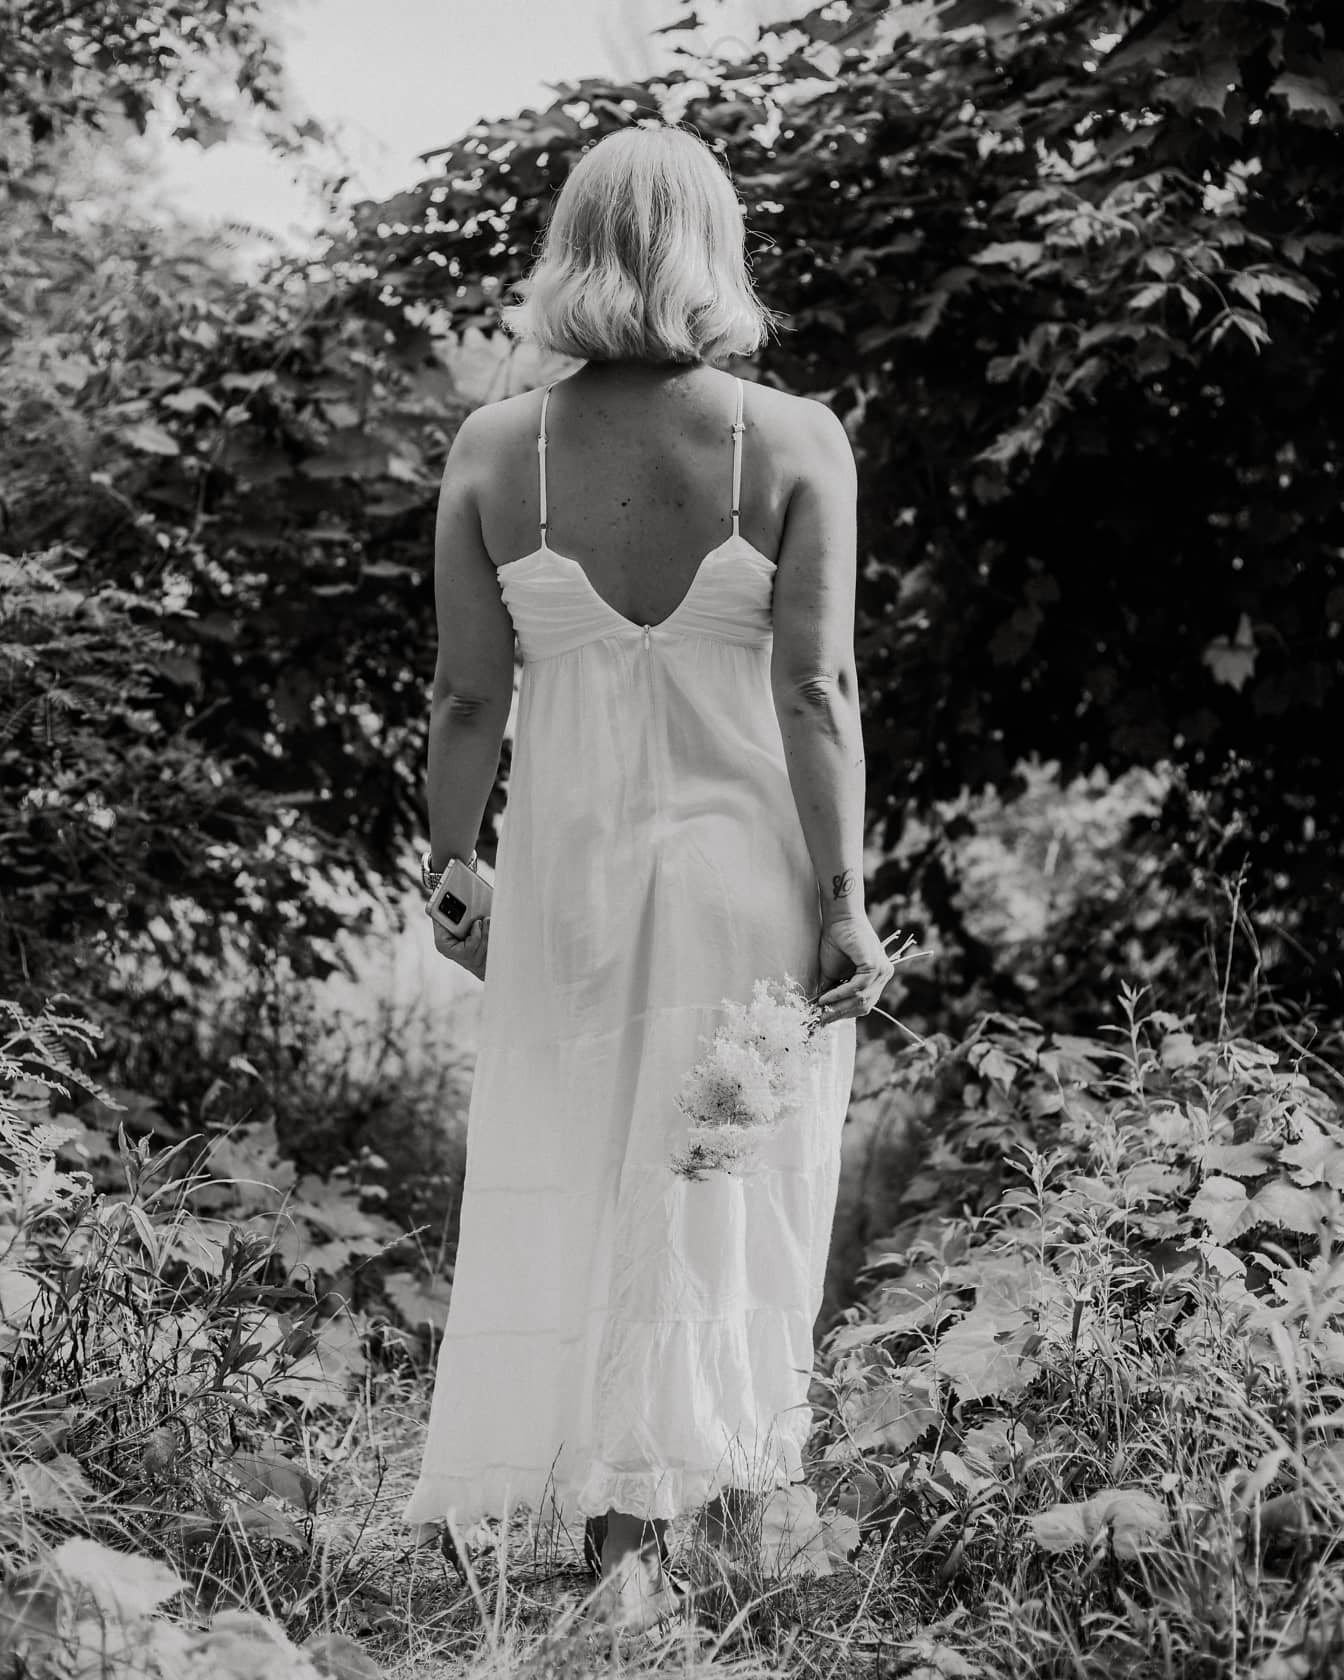 Crno-bijela fotografija mlade žene u bijeloj haljini u grmlju